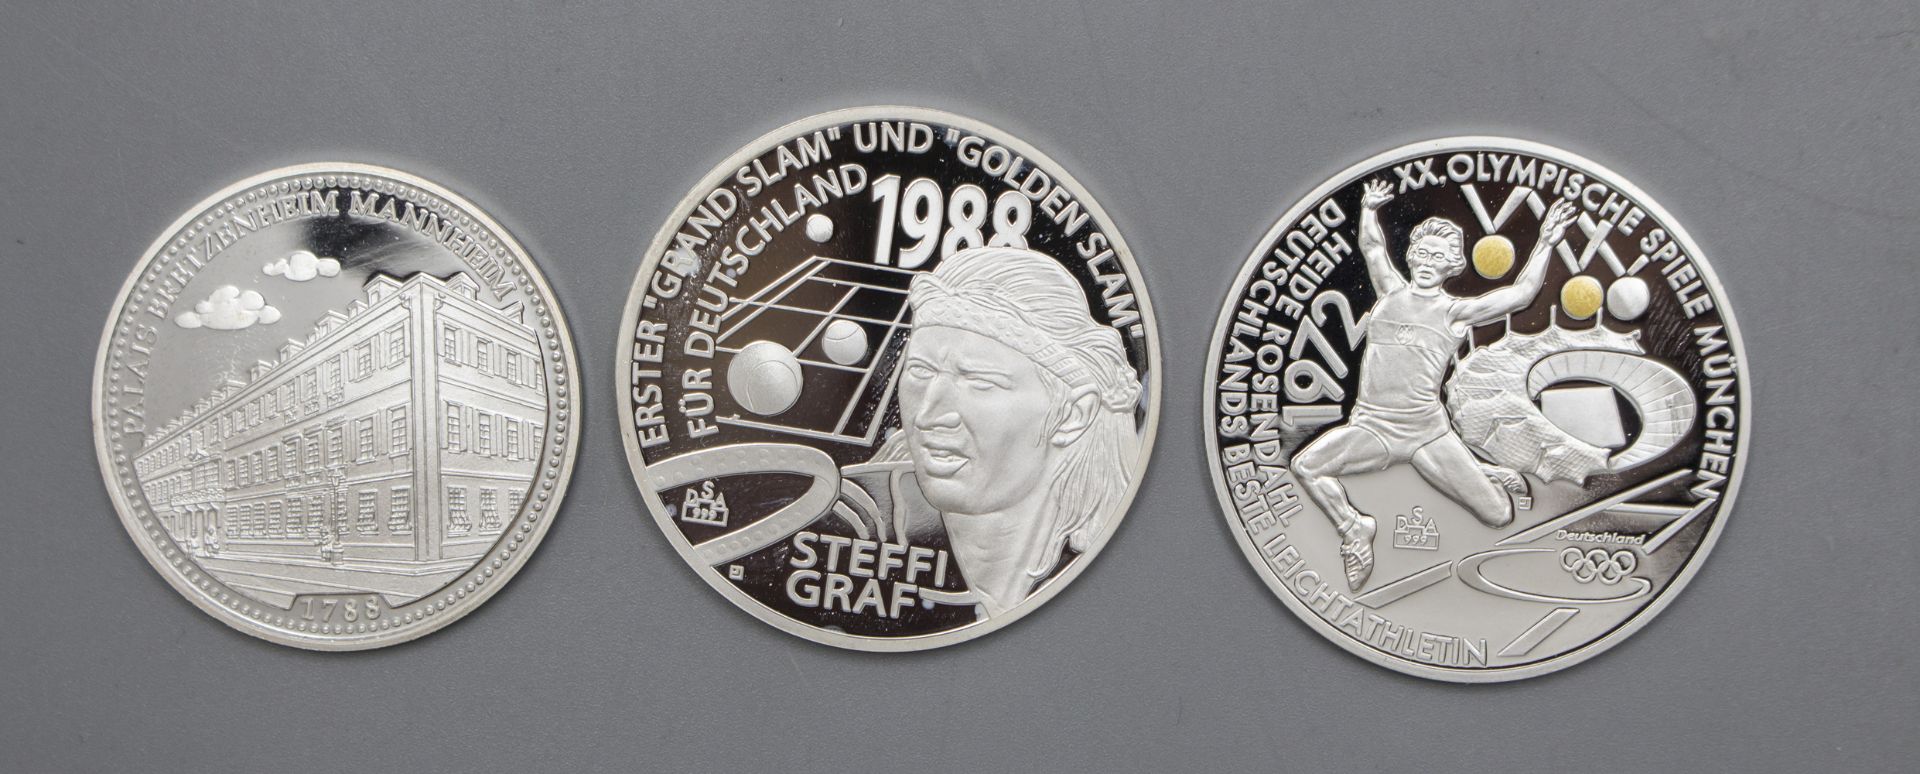 Konvolut Münzen und Medaillen / A collection of coins and medals, unter anderem Mannheim - Image 9 of 10